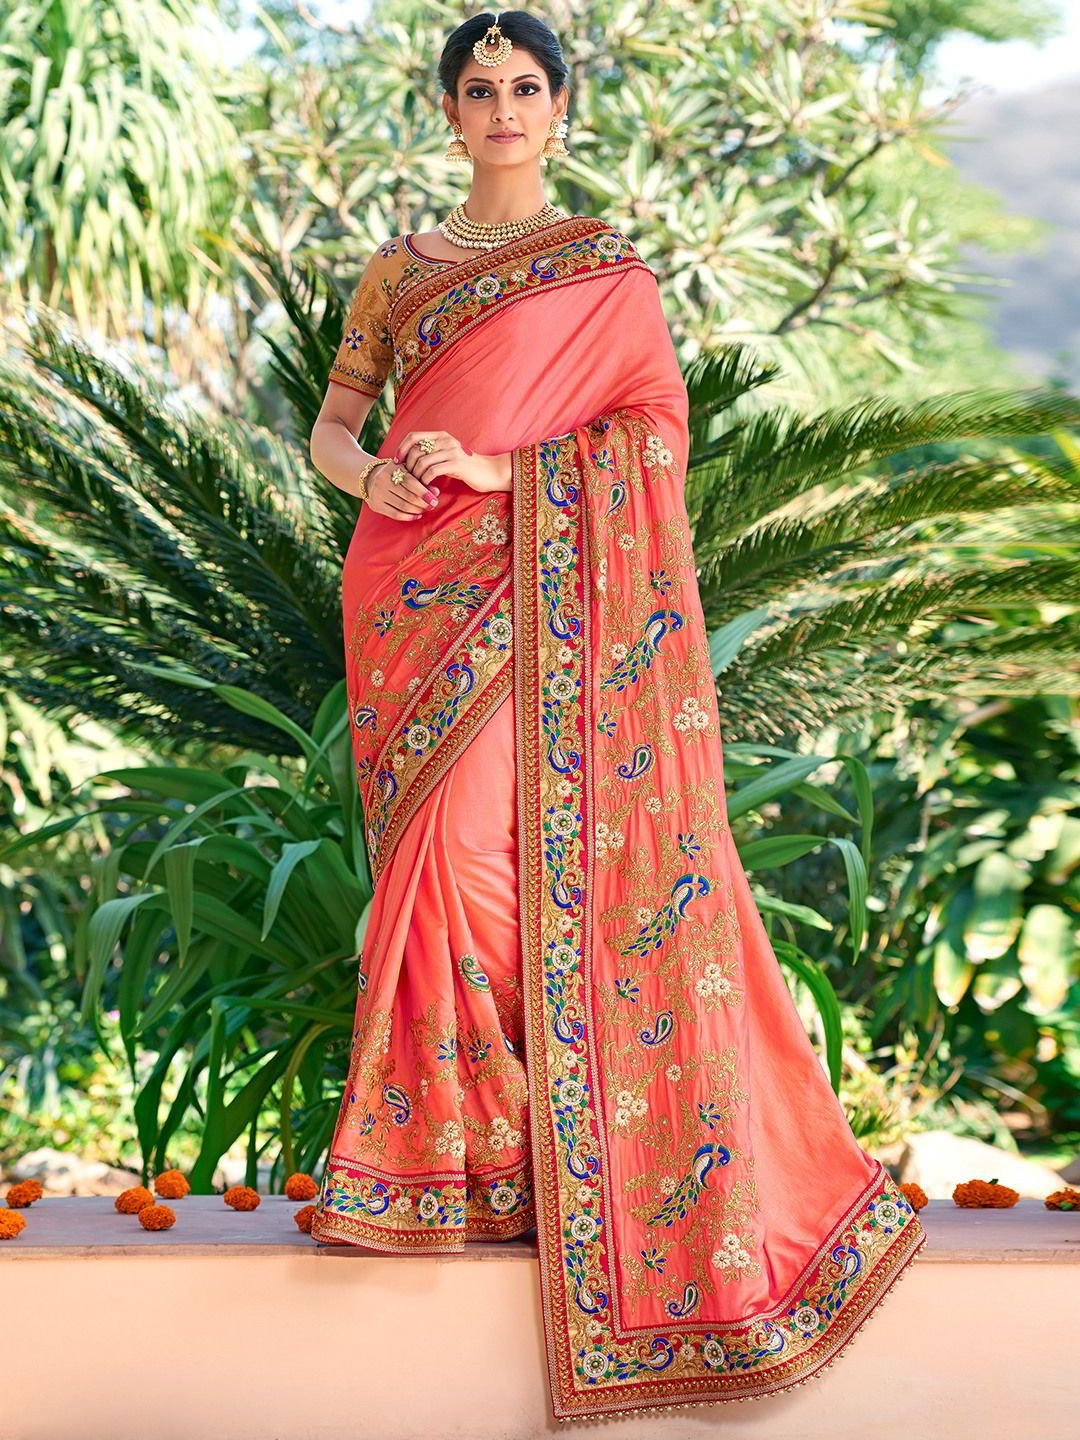 Слово сари. Национальный костюм Индии Сари. Хиндустанцы в национальных костюмах. Сари (женская одежда в Индии). Индия женщины в Сари.